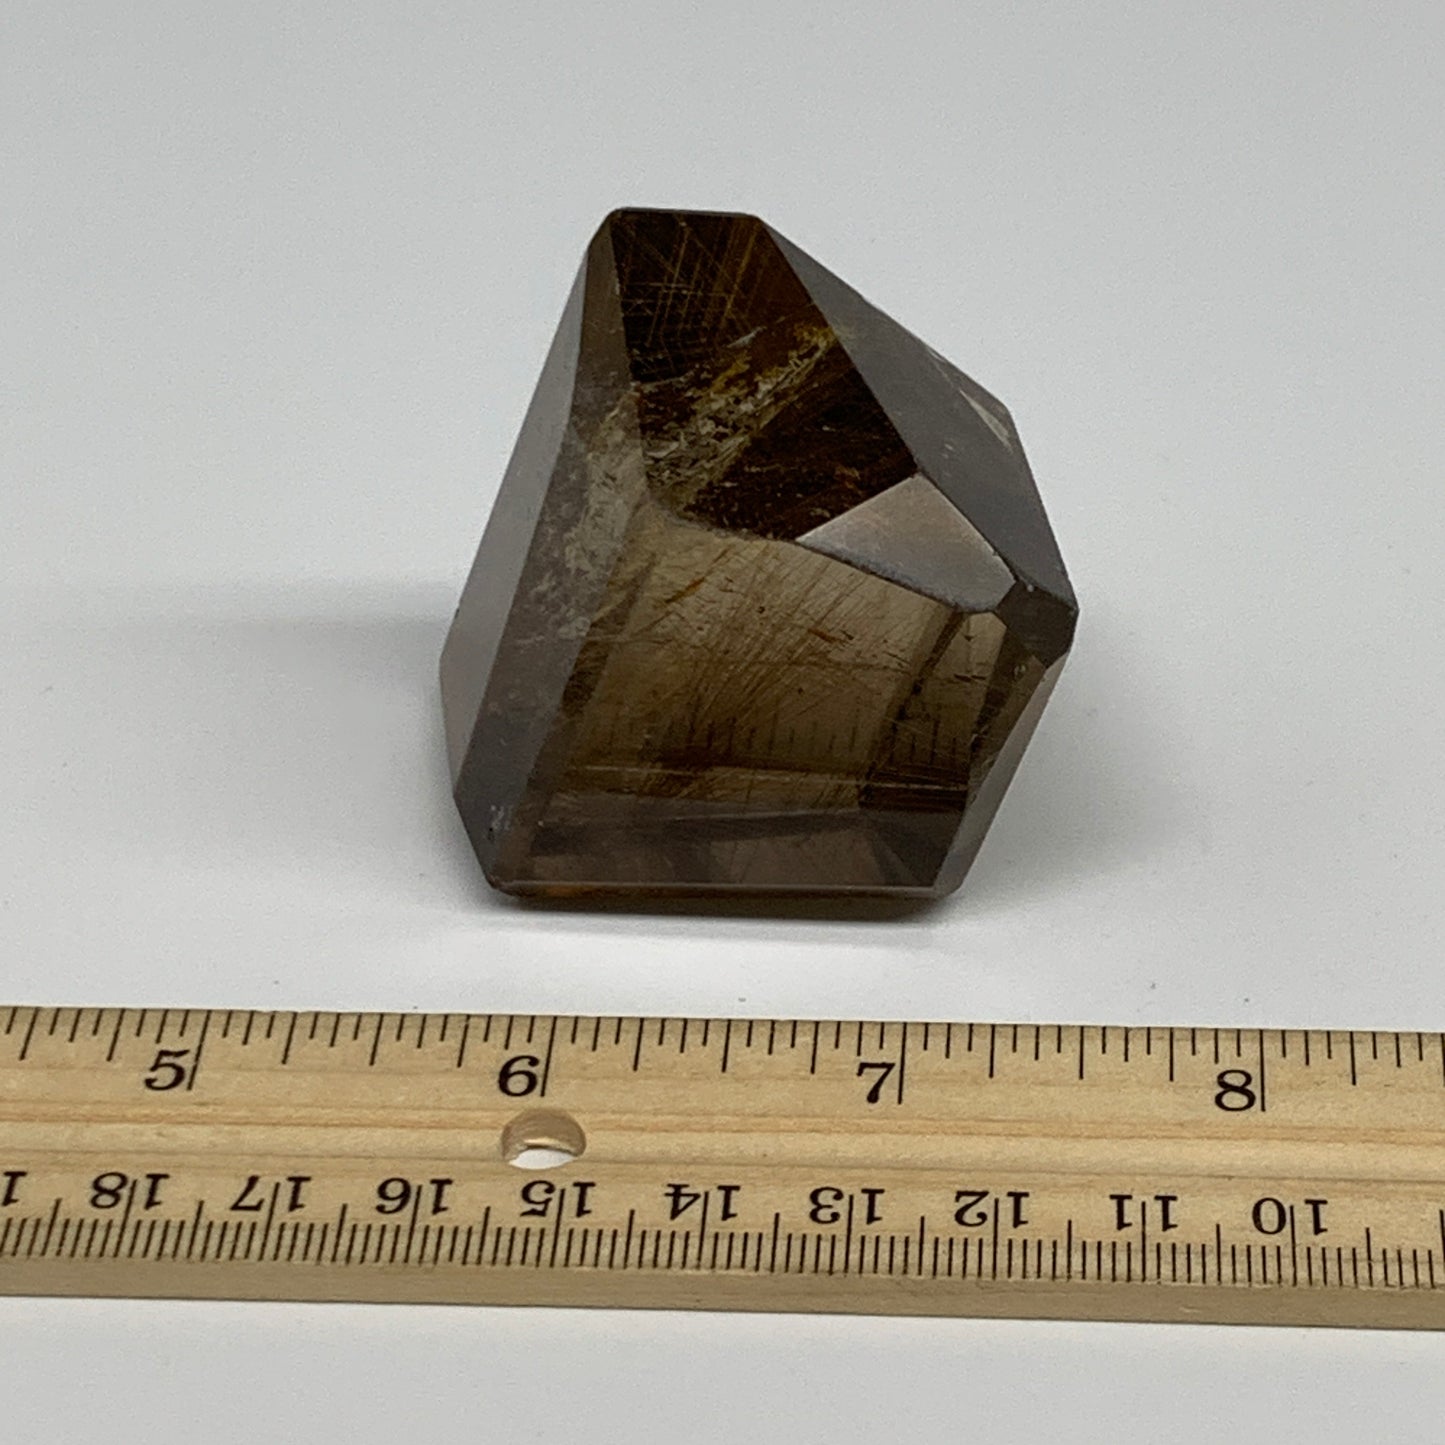 123.2g, 2"x1.4"x1.3", Natural Golden Rutile Quartz Crystal Chunk from Brazil , B